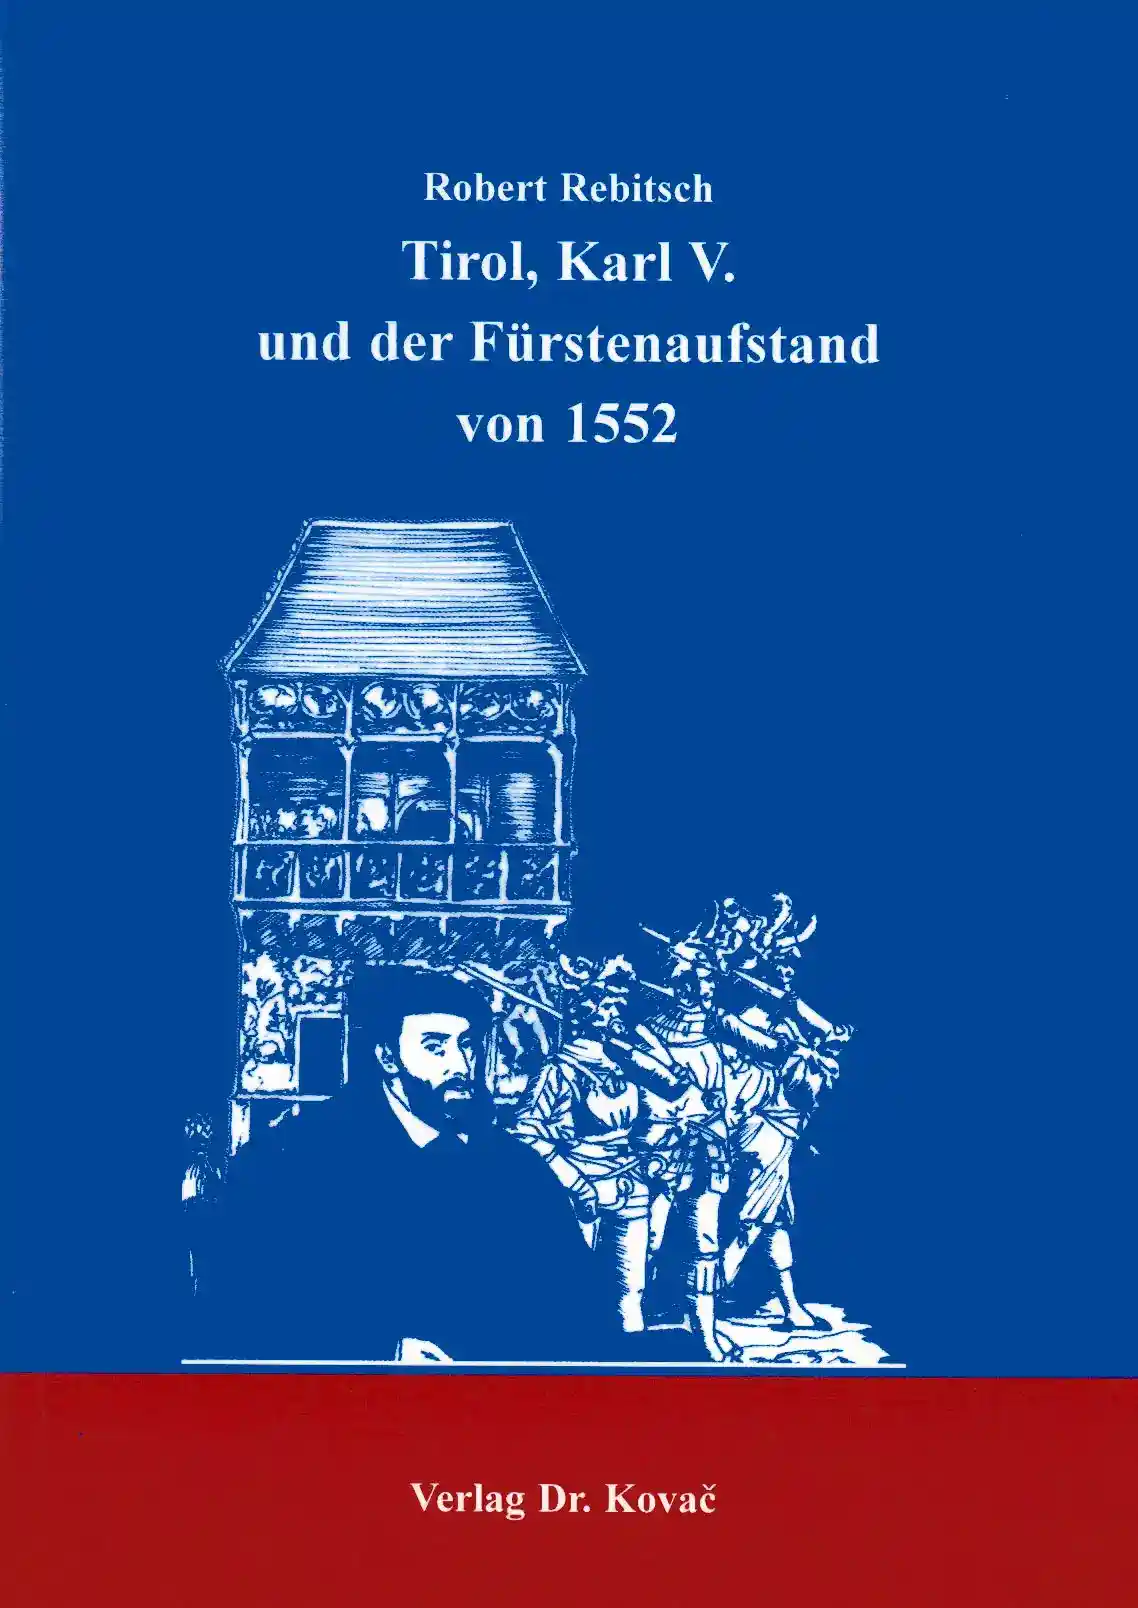 Tirol, Karl V. und der Fürstenaufstand von 1552 (Dissertation)